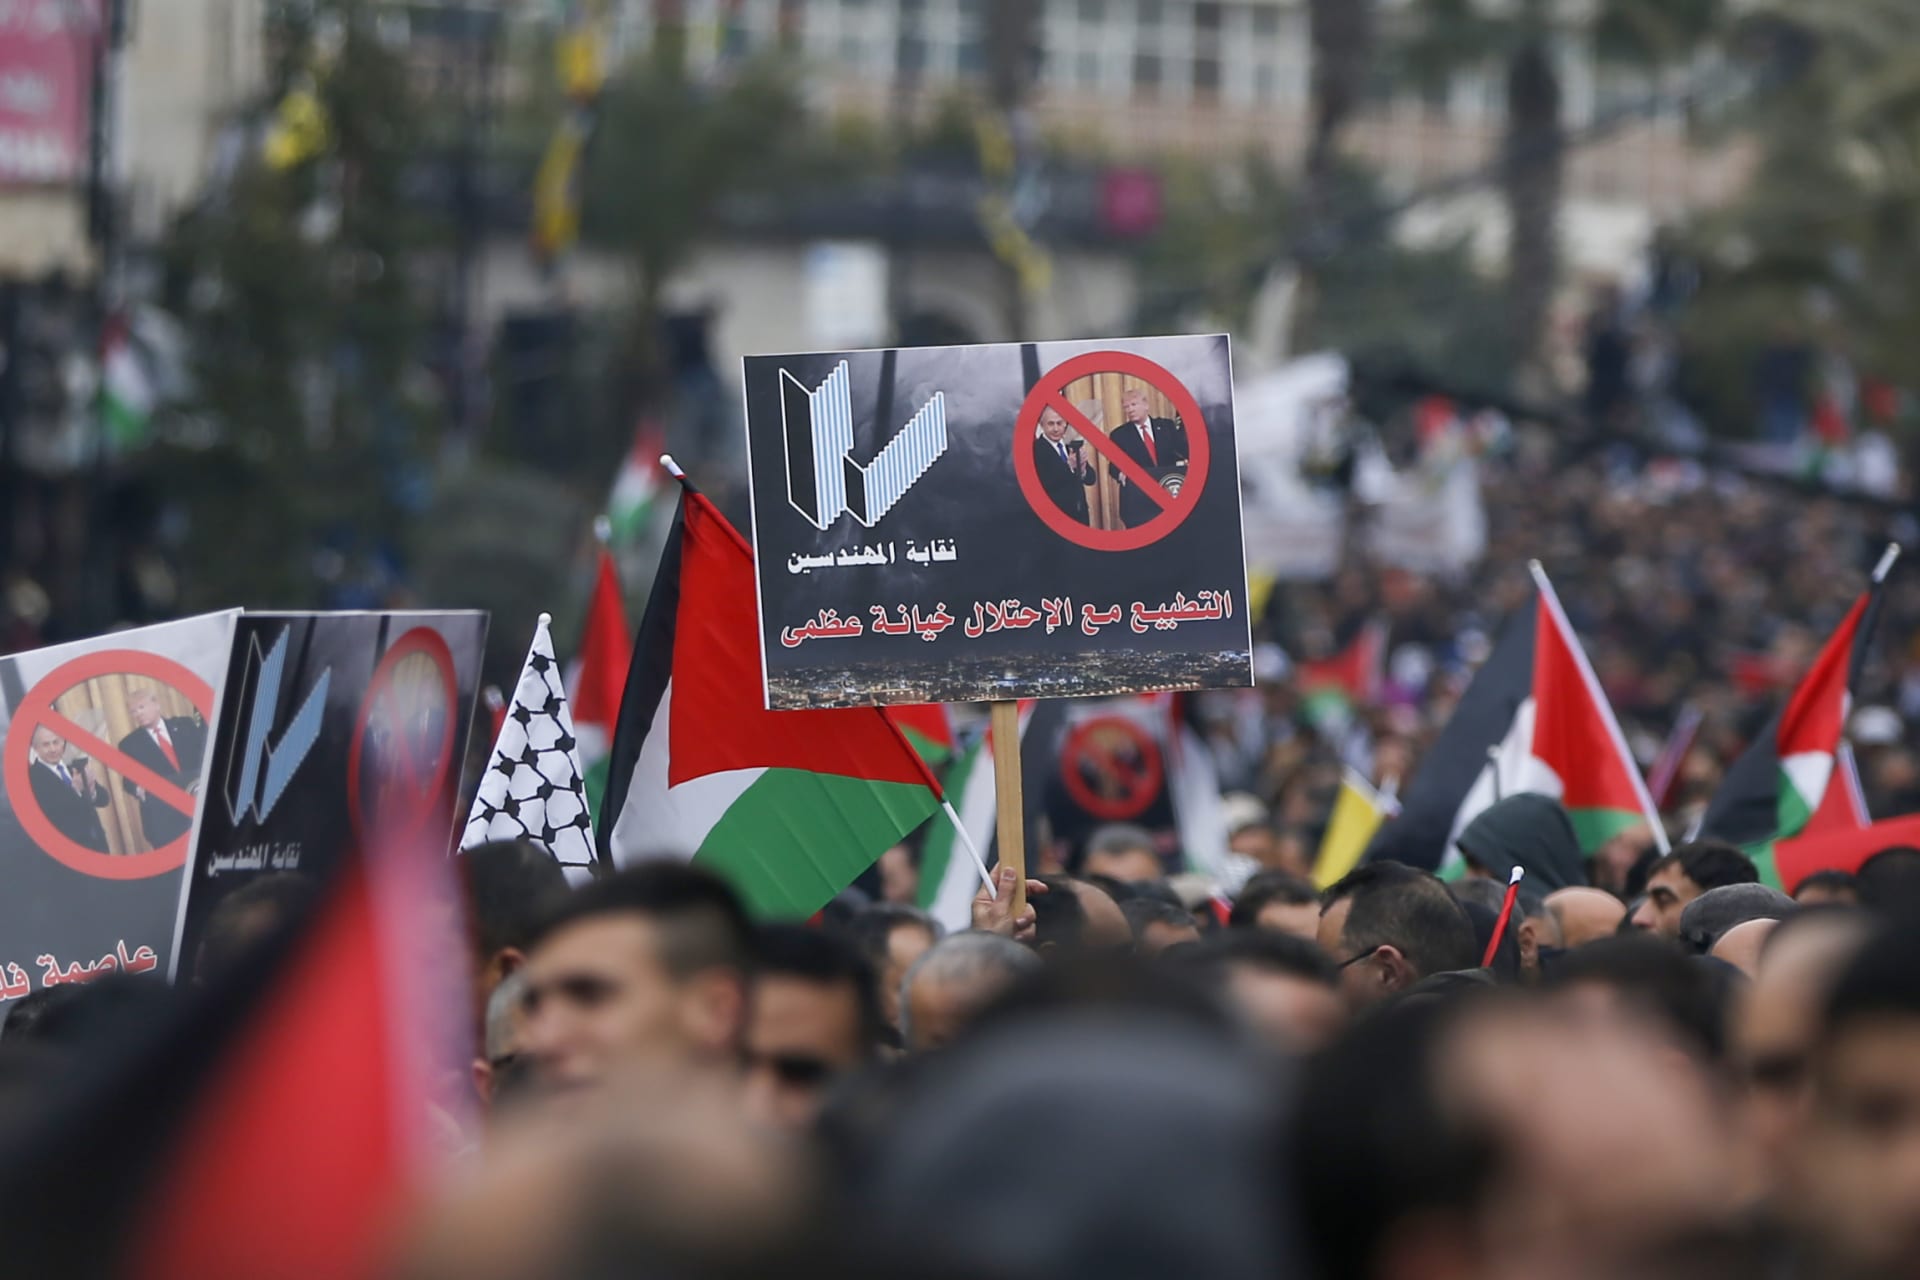 متظاهر فلسطيني يحمل لافتة مناهضة لتطبيع العلاقات مع اسرائيل في مدينة رام الله بالضفة الغربية